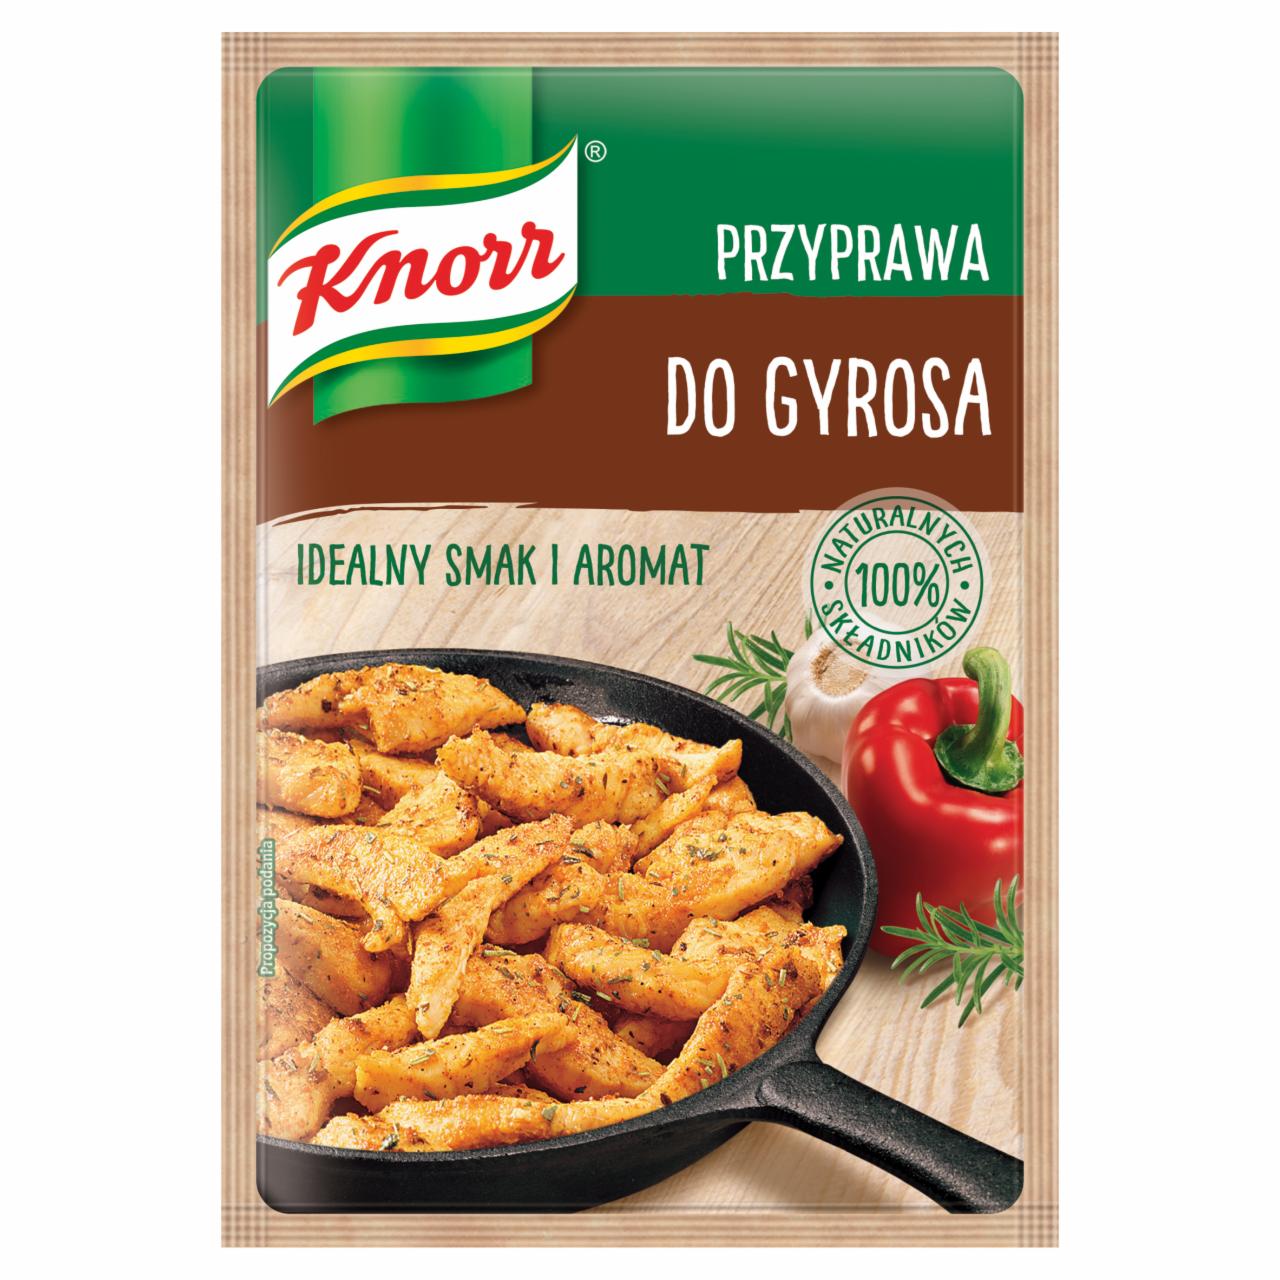 Zdjęcia - Knorr Przyprawa do gyrosa 23 g